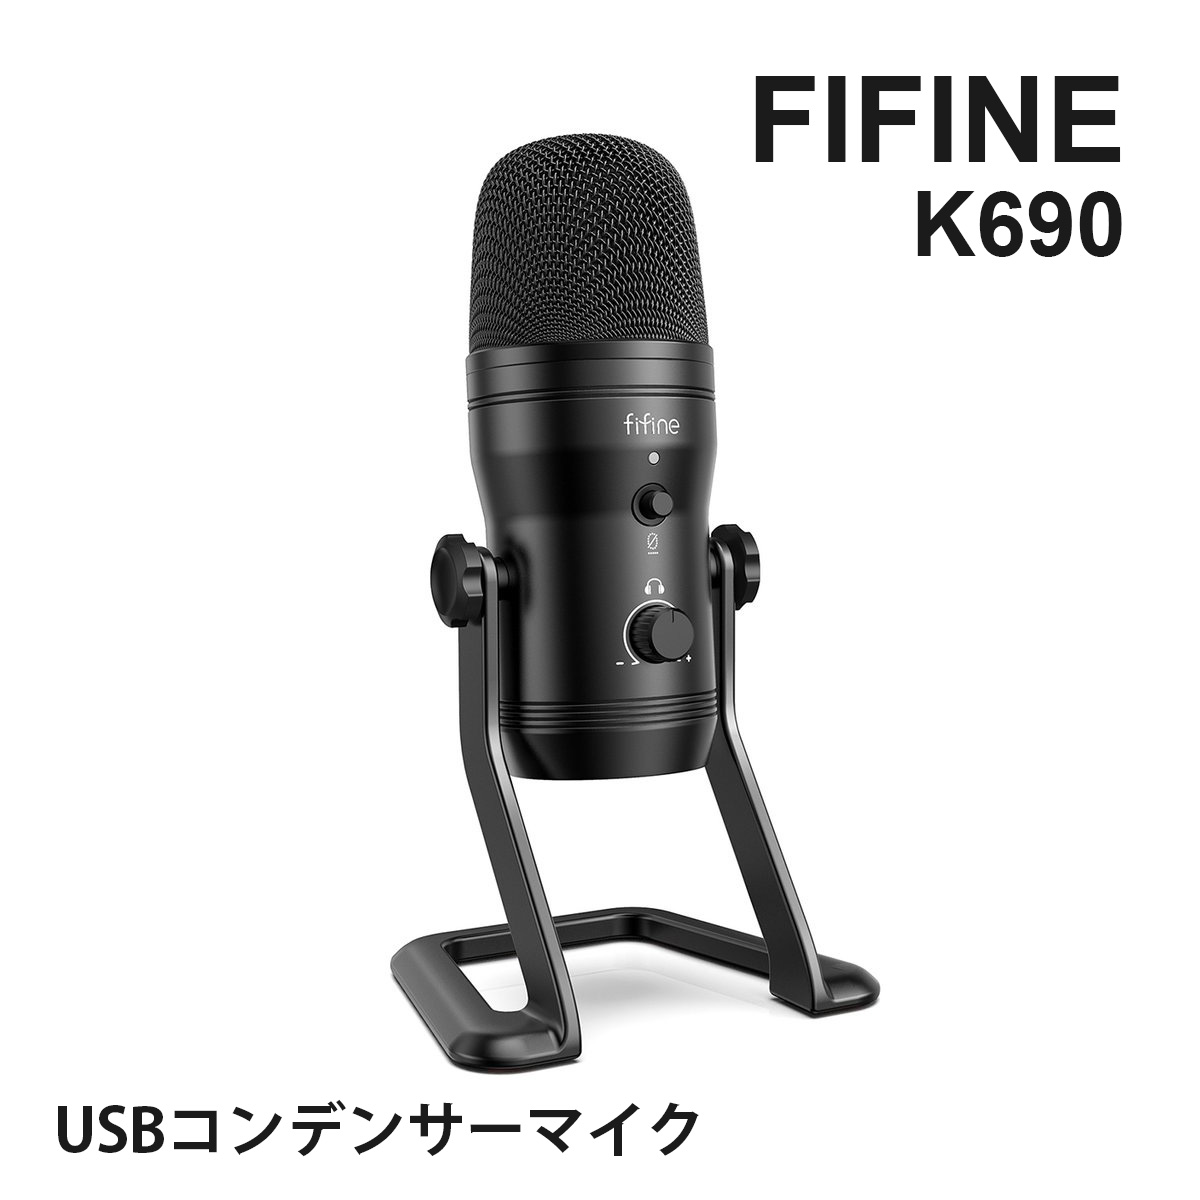 K690 FIFINE USBマイク コンデンサーマイク ステレオレコーディングマイク ミュートボタンと音声モニター可能な3.5mmイヤホン端子付き 極性調整可能 定番